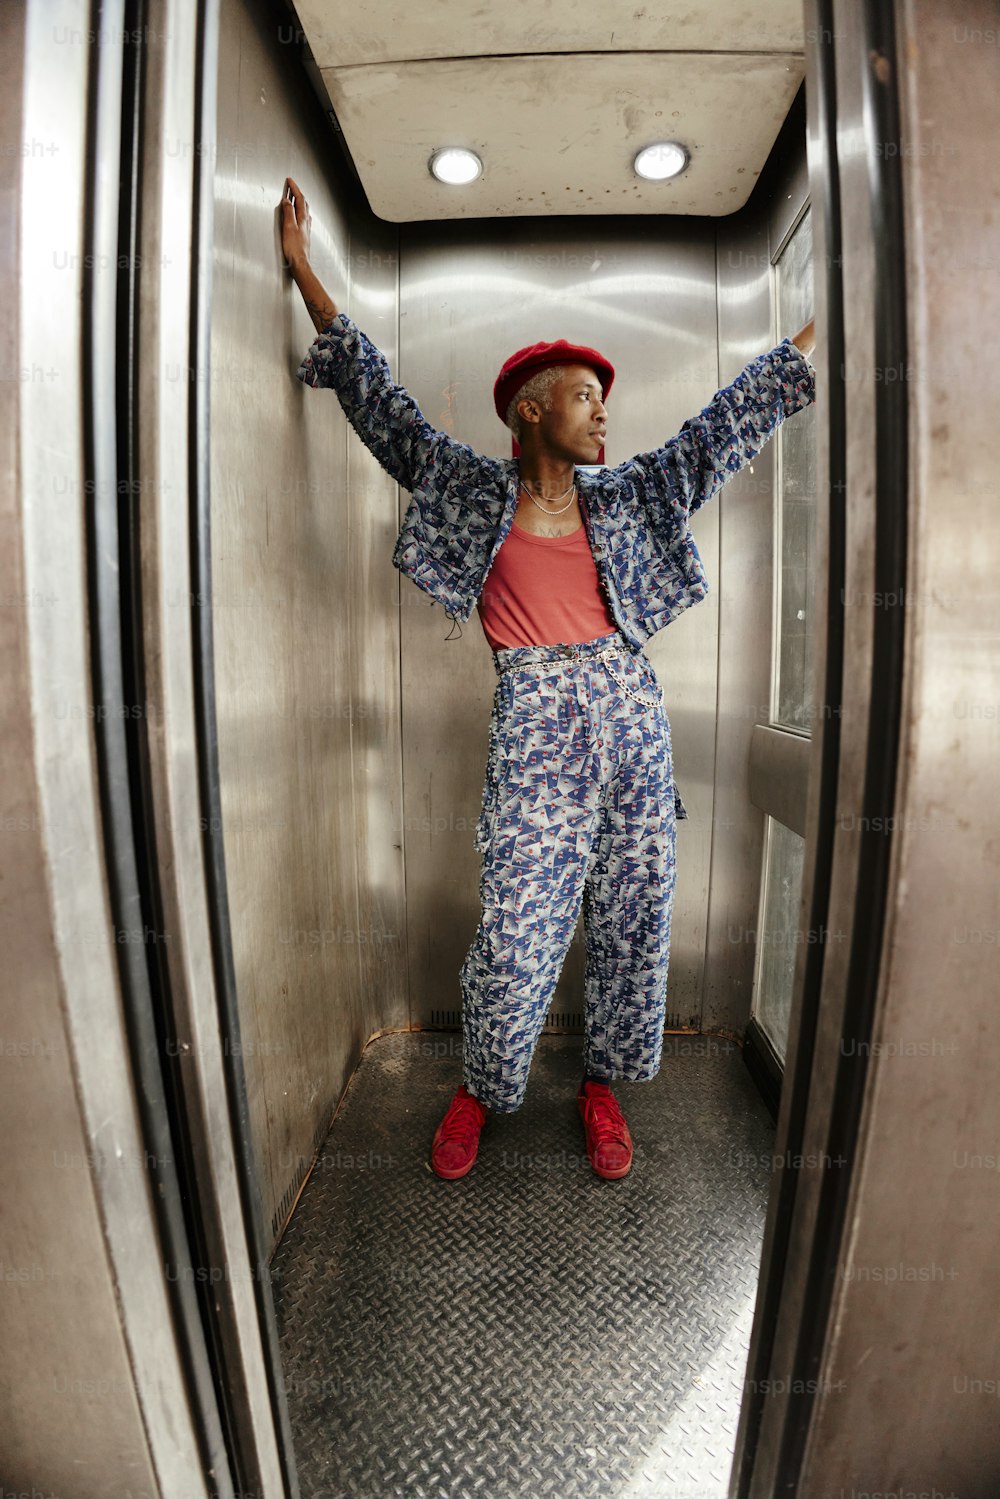 Une femme portant un chapeau rouge se tient dans un ascenseur